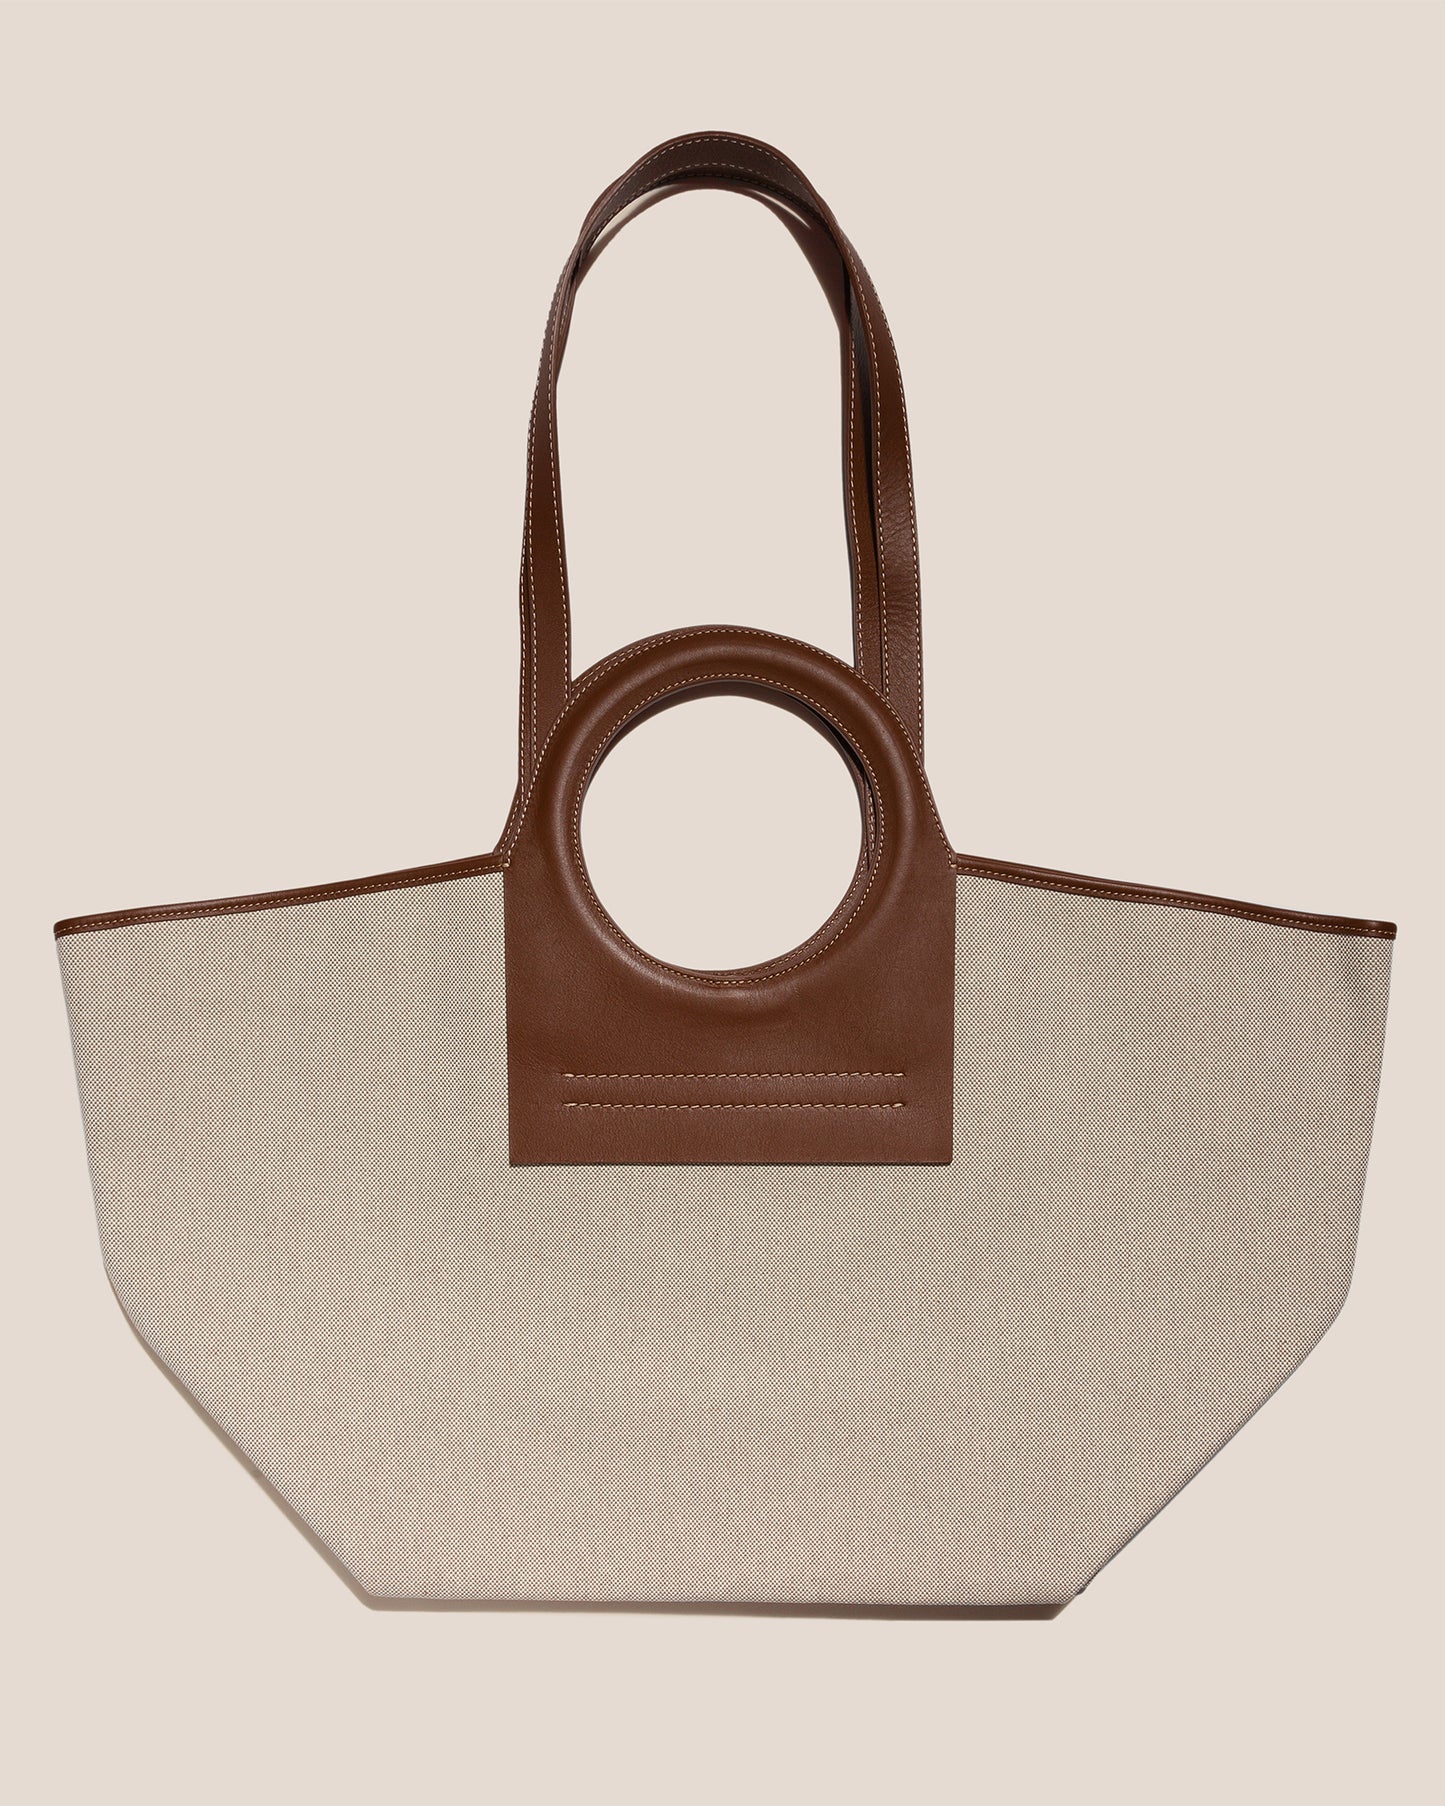 Hereu Cala Small Canvas Tote Bag, Beige/Chestnut, Women's, Handbags & Purses Tote Bags & Totes